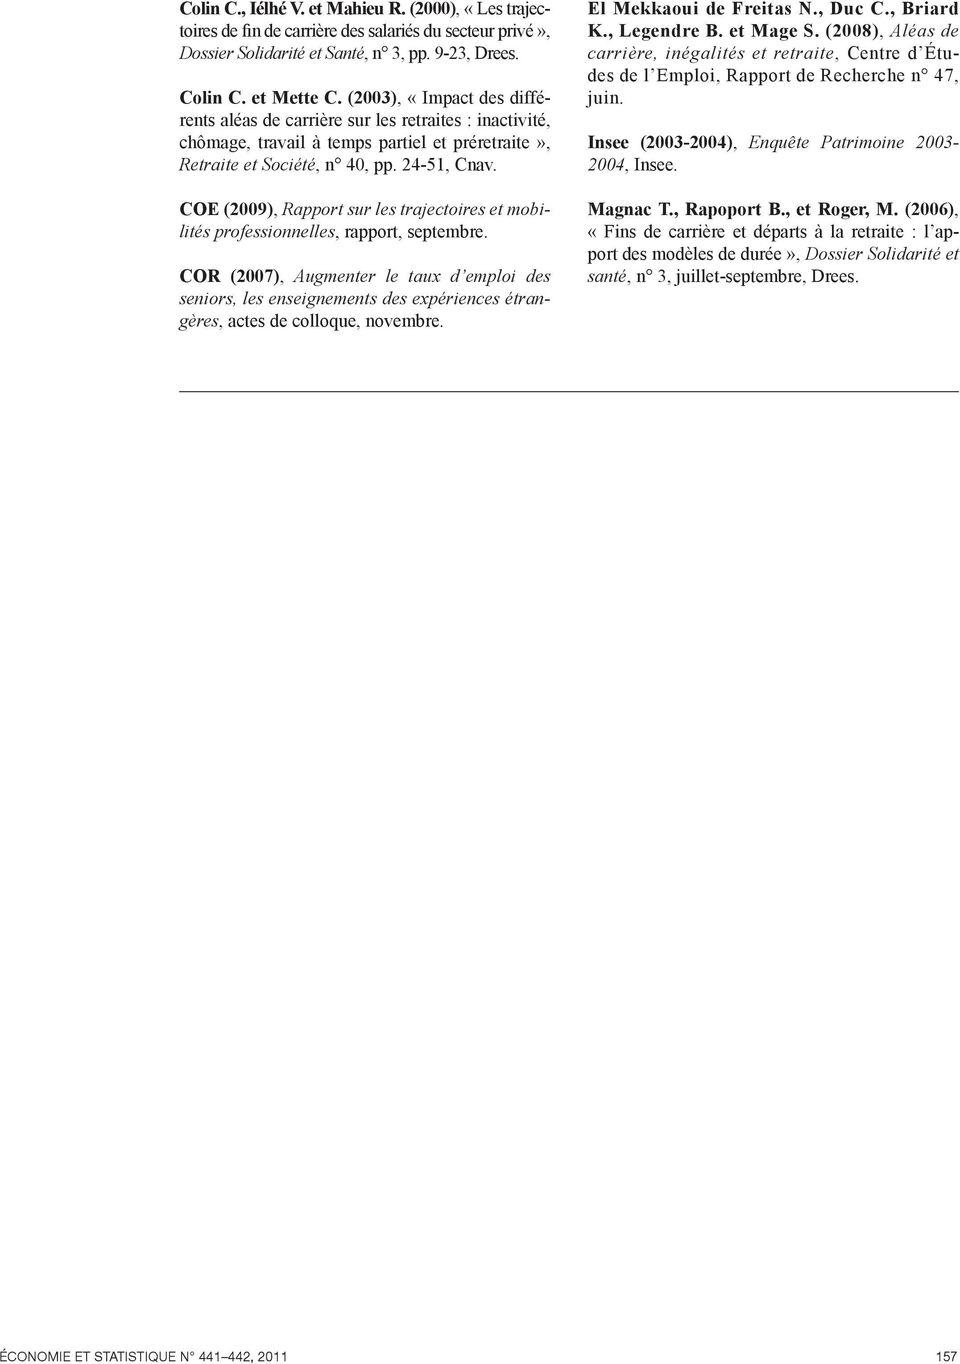 COE (2009), Rapport sur les trajectoires et mobilités professionnelles, rapport, septembre.